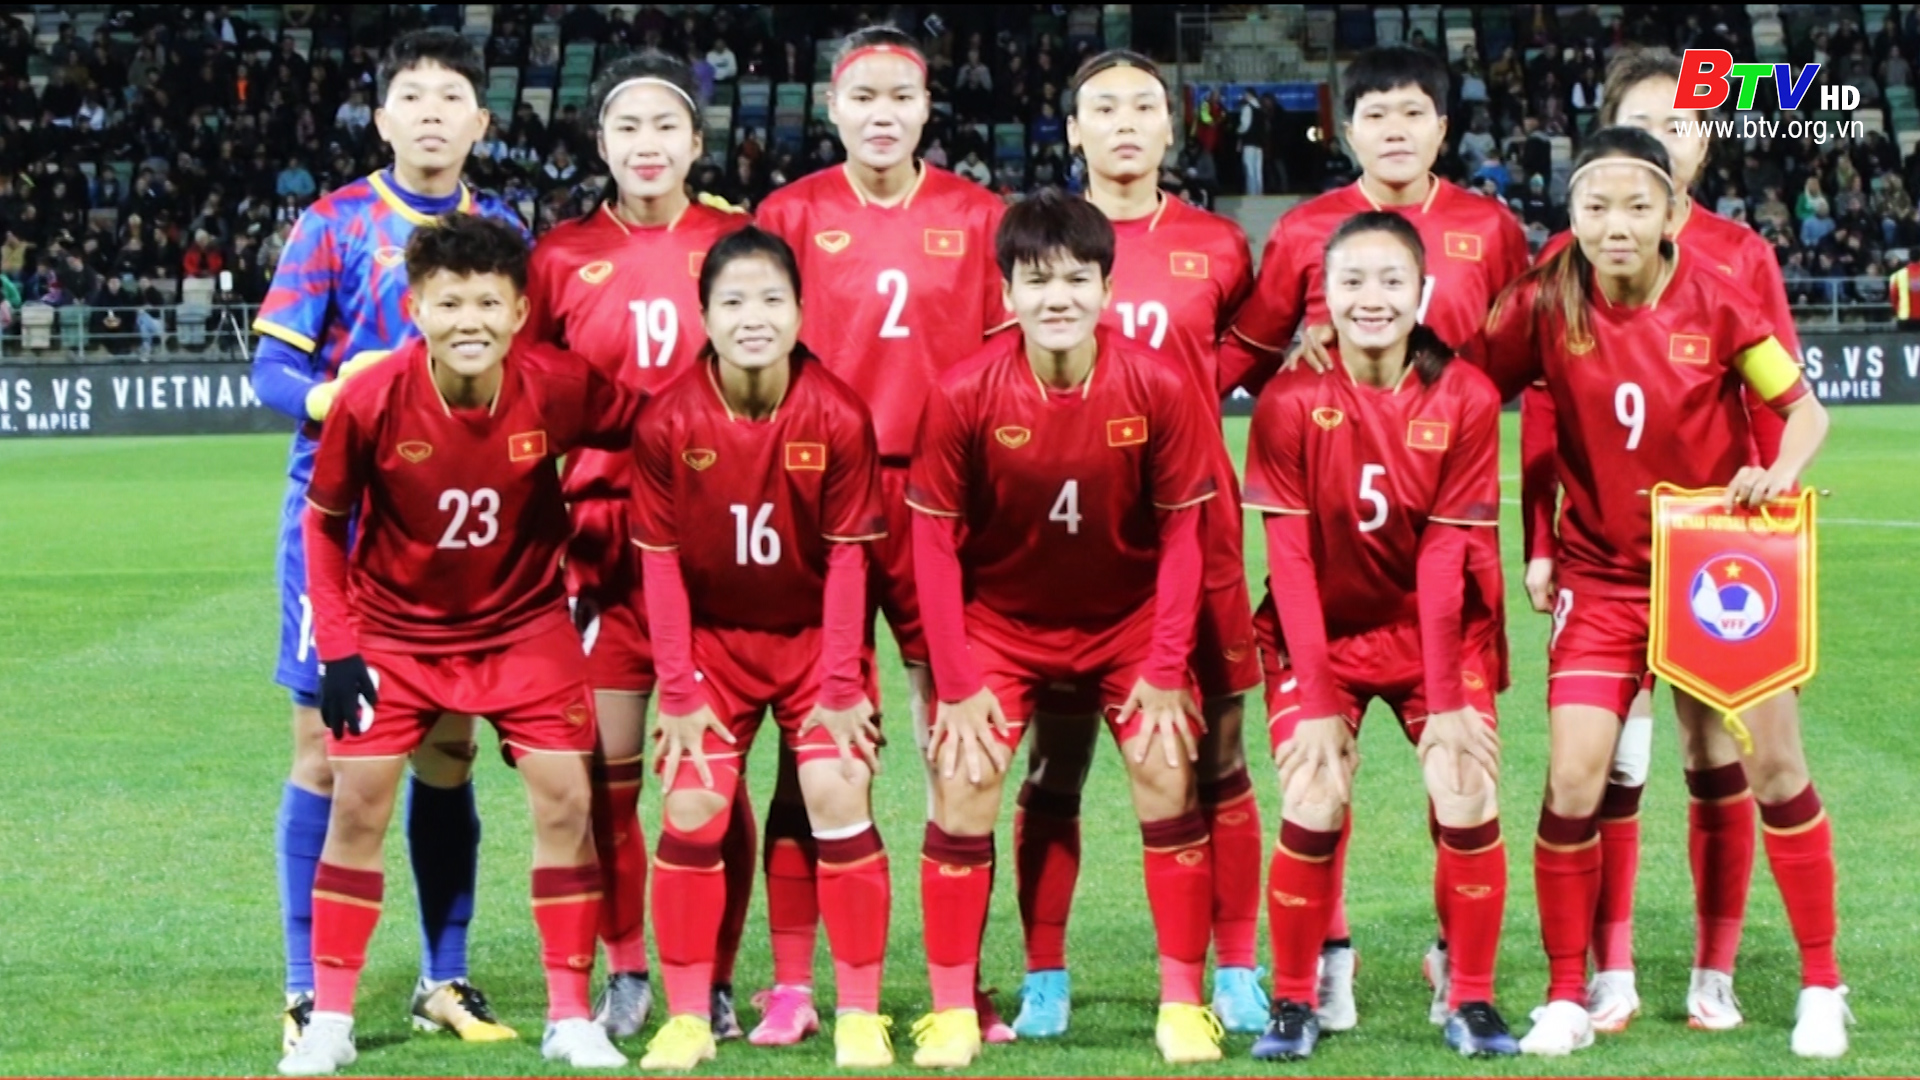 Giao hữu quốc tế: Đội tuyển nữ New Zealand – Đội tuyển Nữ Việt Nam: 2-0